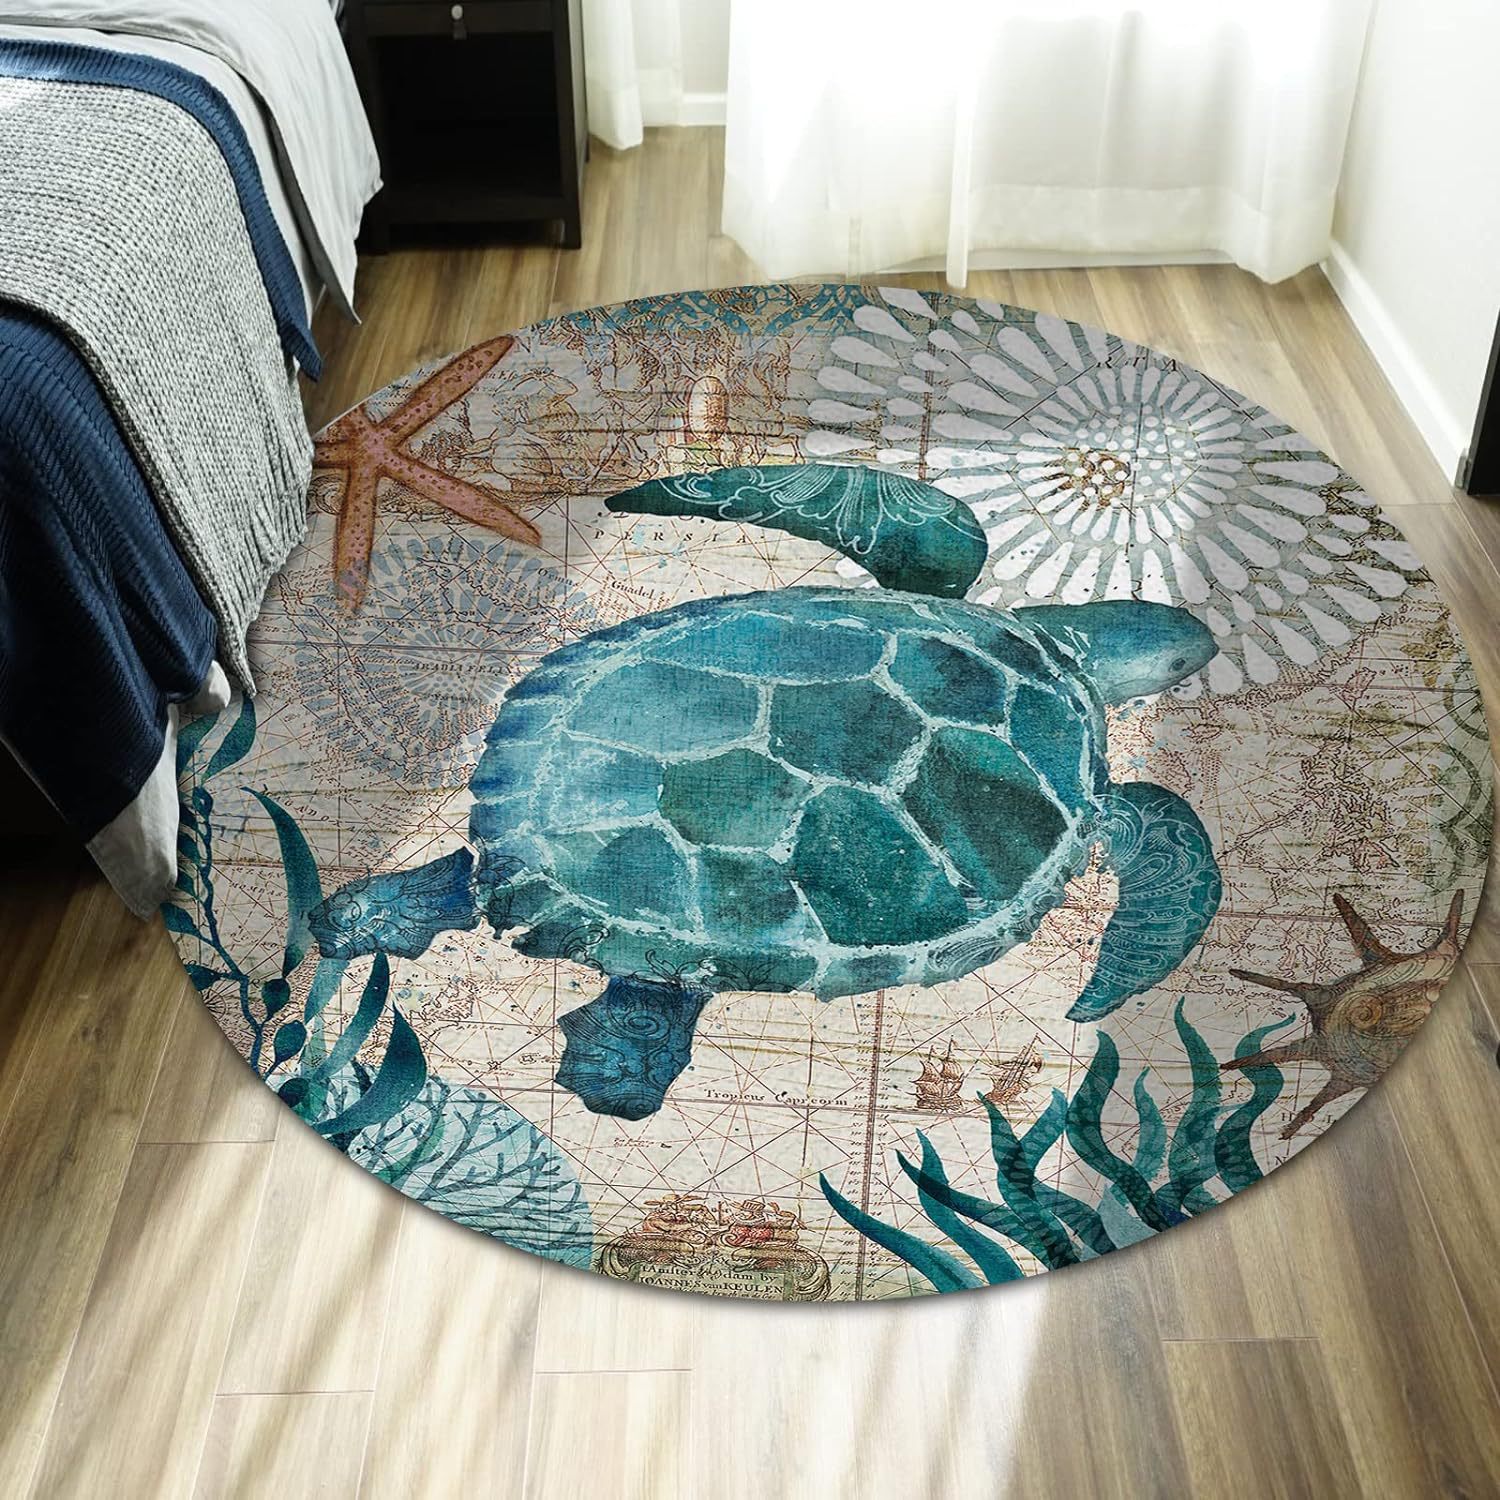 亚马逊海龟动物地毯圆形吊篮摇椅垫客厅地毯沙发茶几毯卧室床边毯